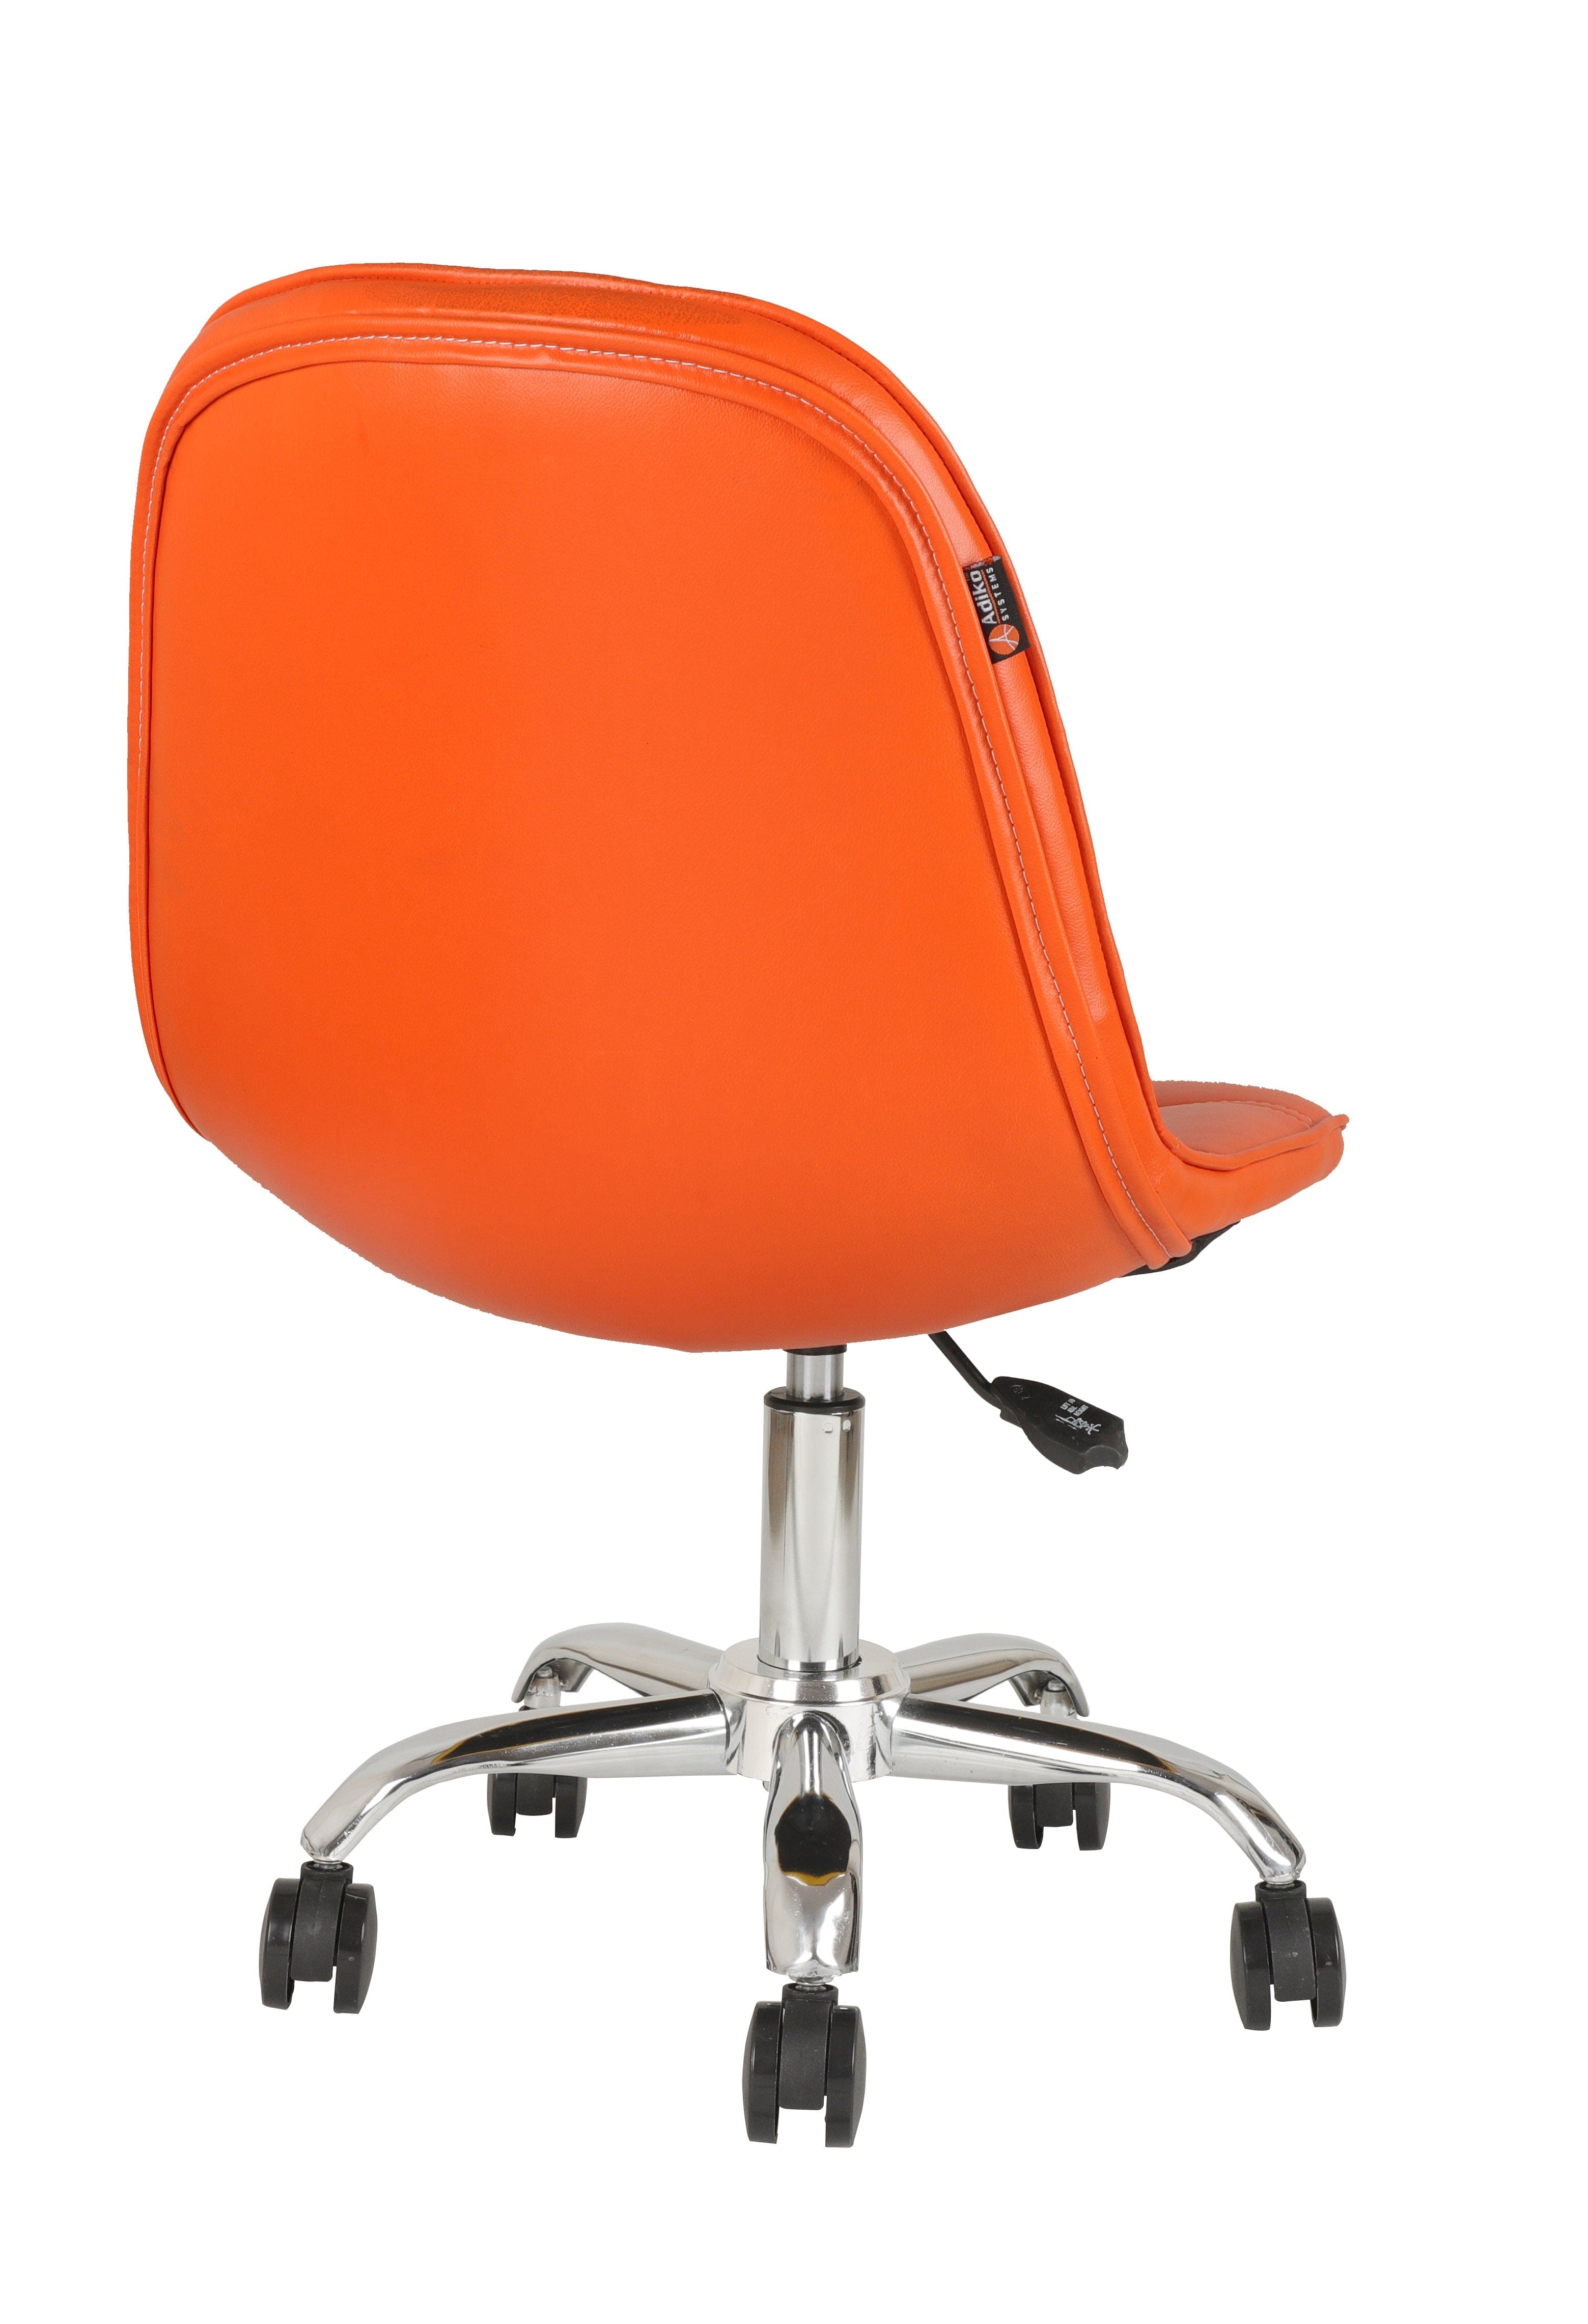 Adiko Lounge Chair in Orange